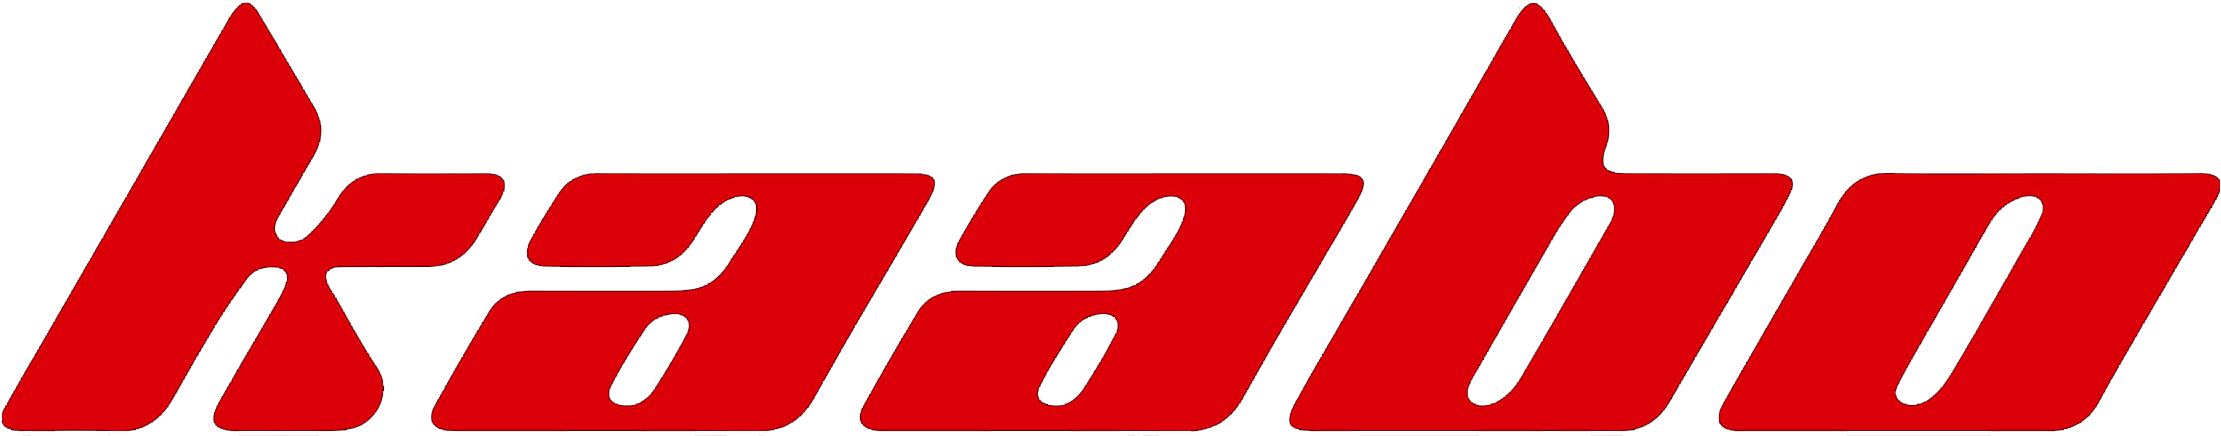 kaabo-logo.png